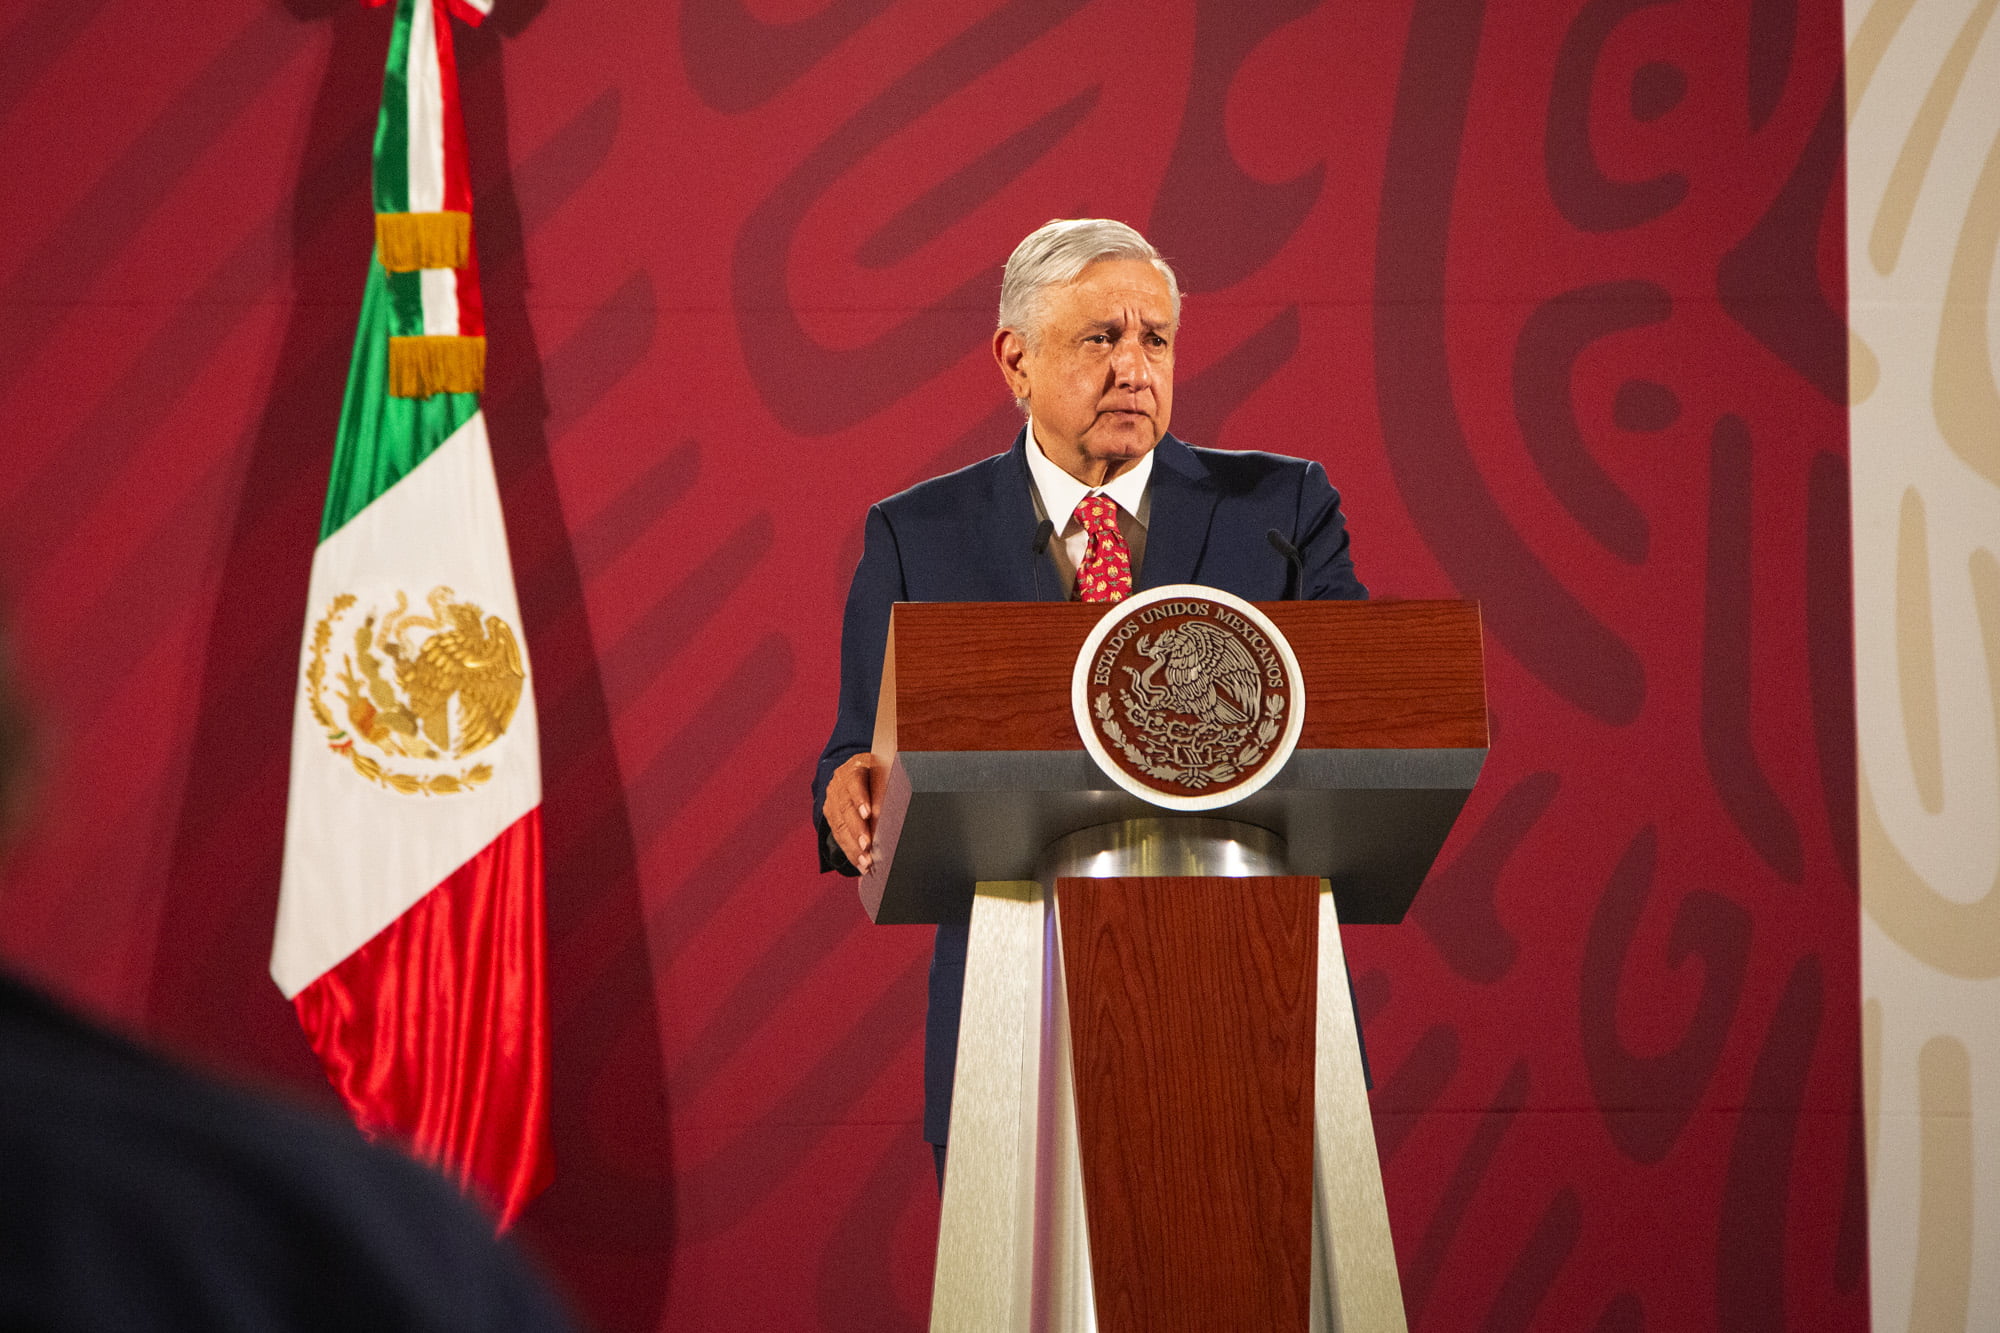 Organizaciones piden a López Obrador abrir un diálogo político y reconocer historia y experiencia de la sociedad civil